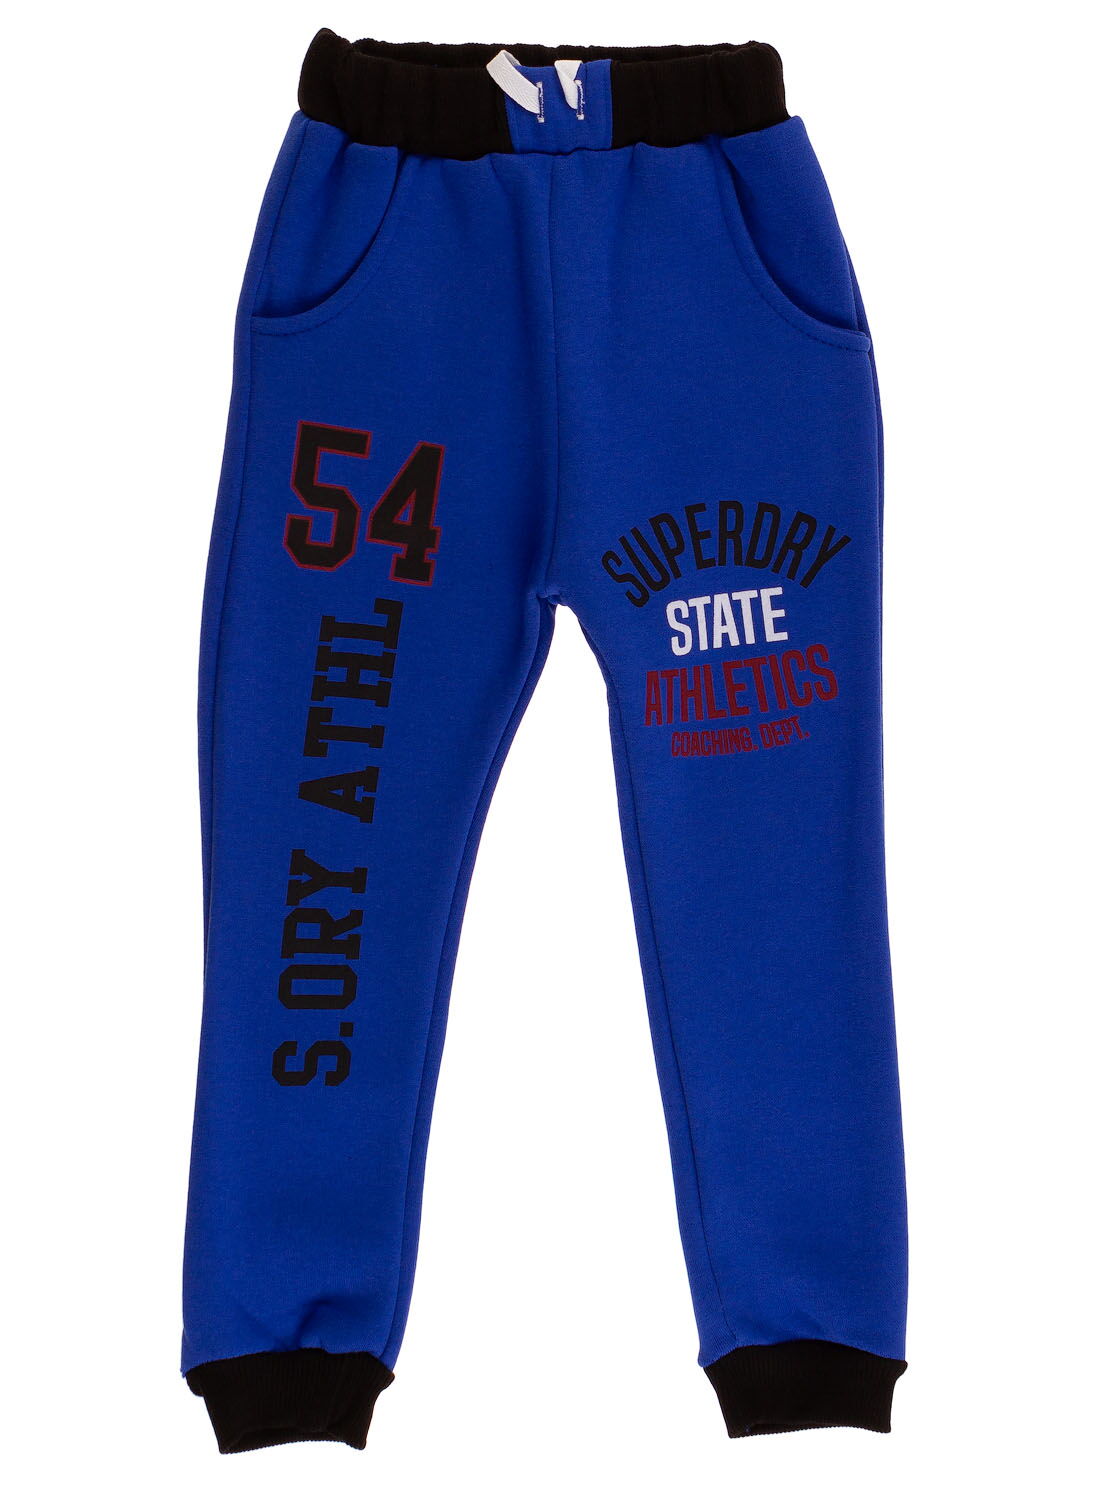 Утепленные спортивные штаны для мальчика 54 синие - цена